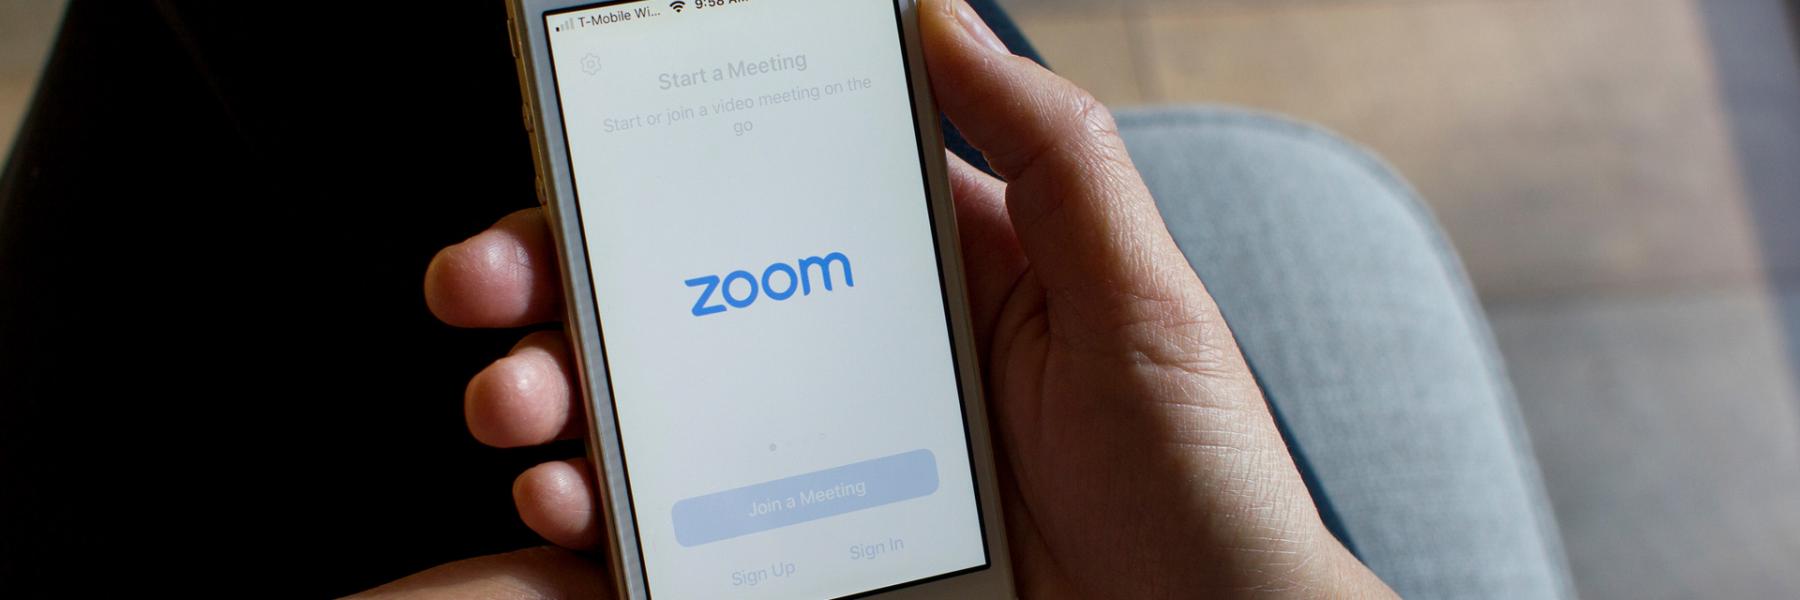 غوغل تحظر تطبيق "Zoom" وتحذر موظفيها من استخدامه